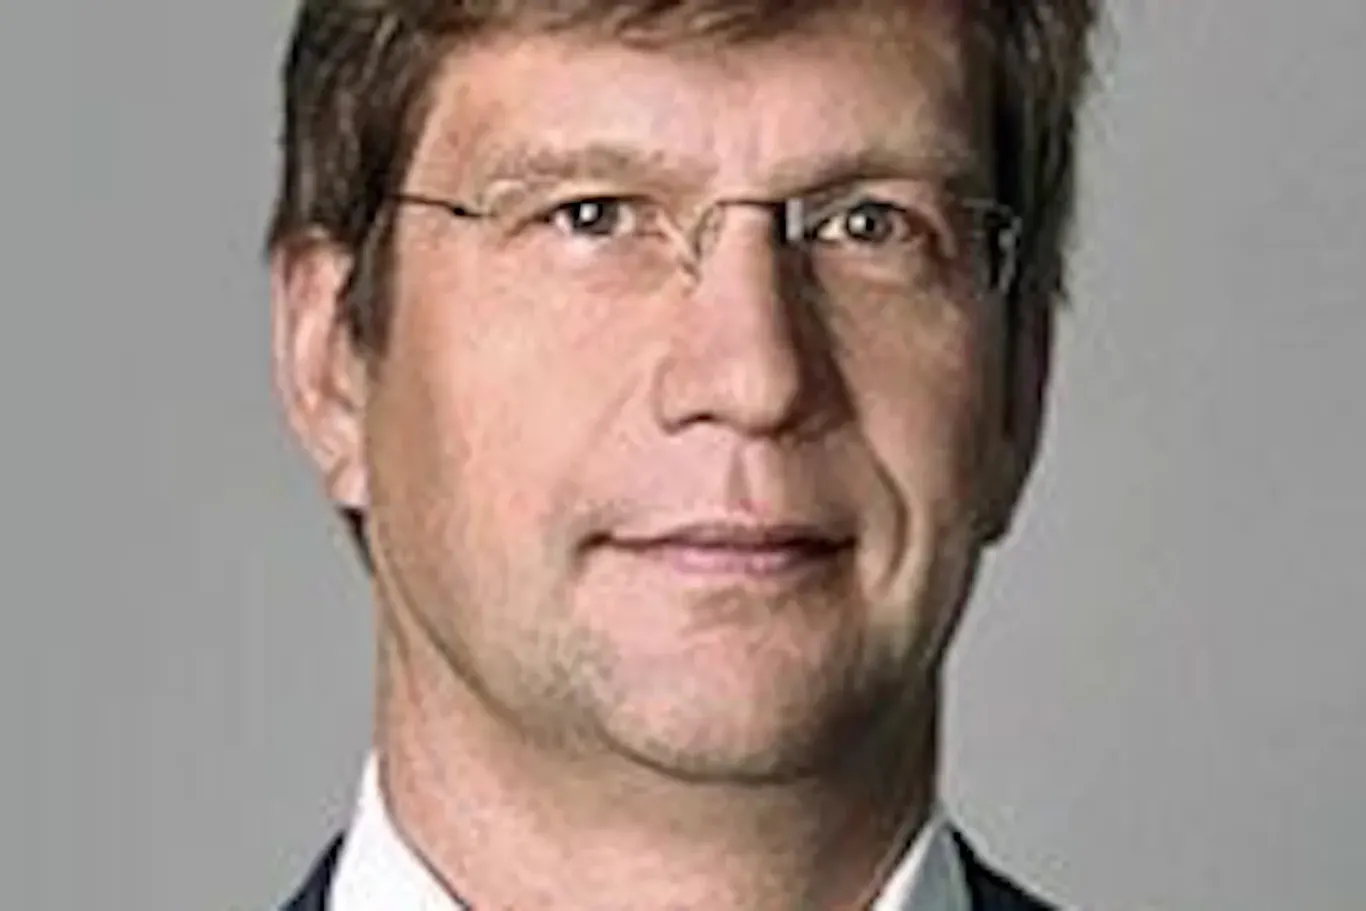 Kolumnist Christoph Schwennicke